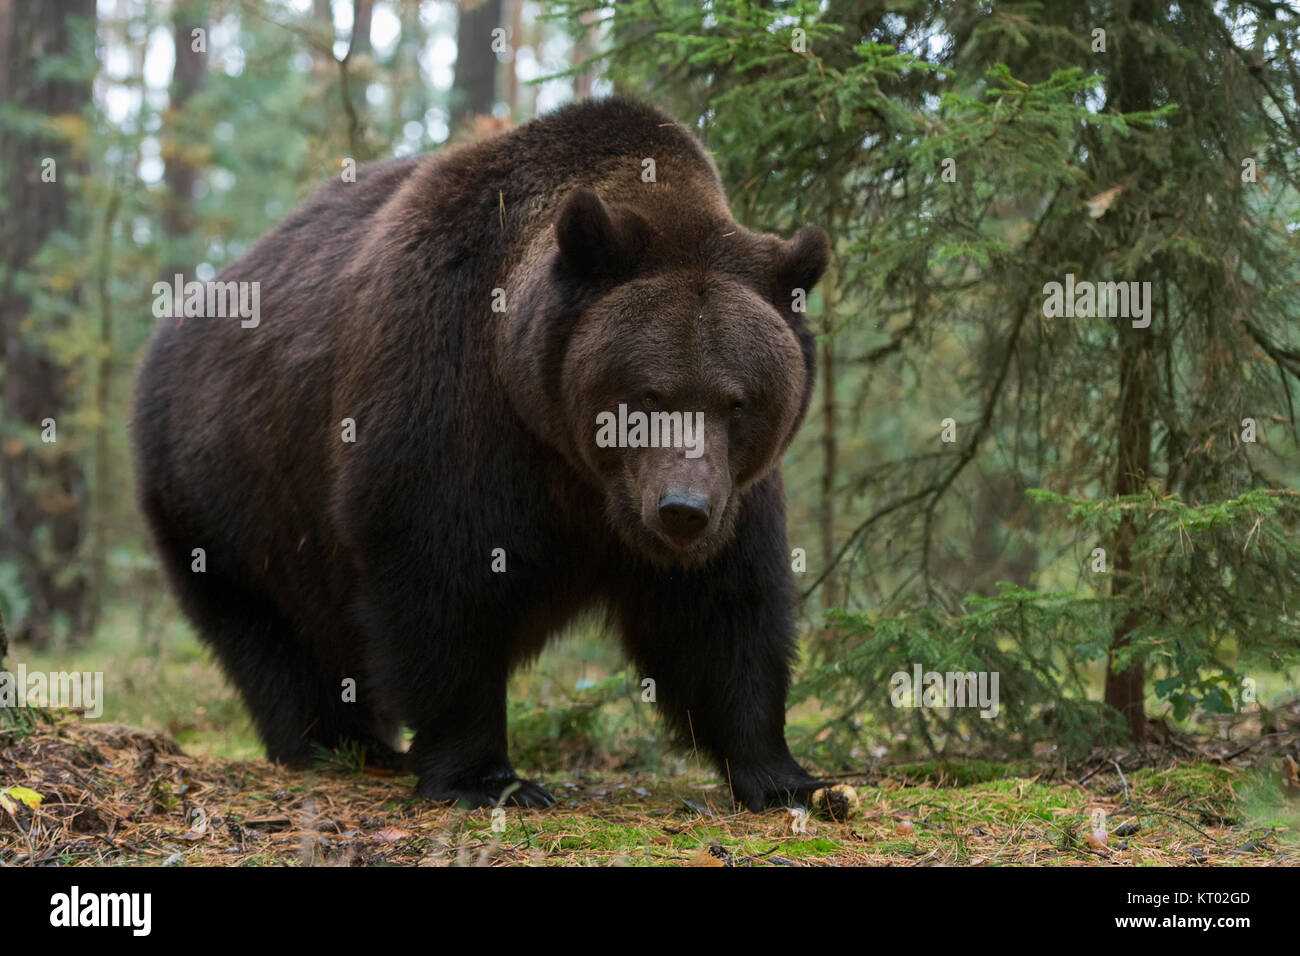 Europäische Braunbär (Ursus arctos), kräftig und mächtig nach und stand am Rand eines Borealer Wald, auf einer Waldlichtung, verdächtig ist, gefährlich. Stockfoto